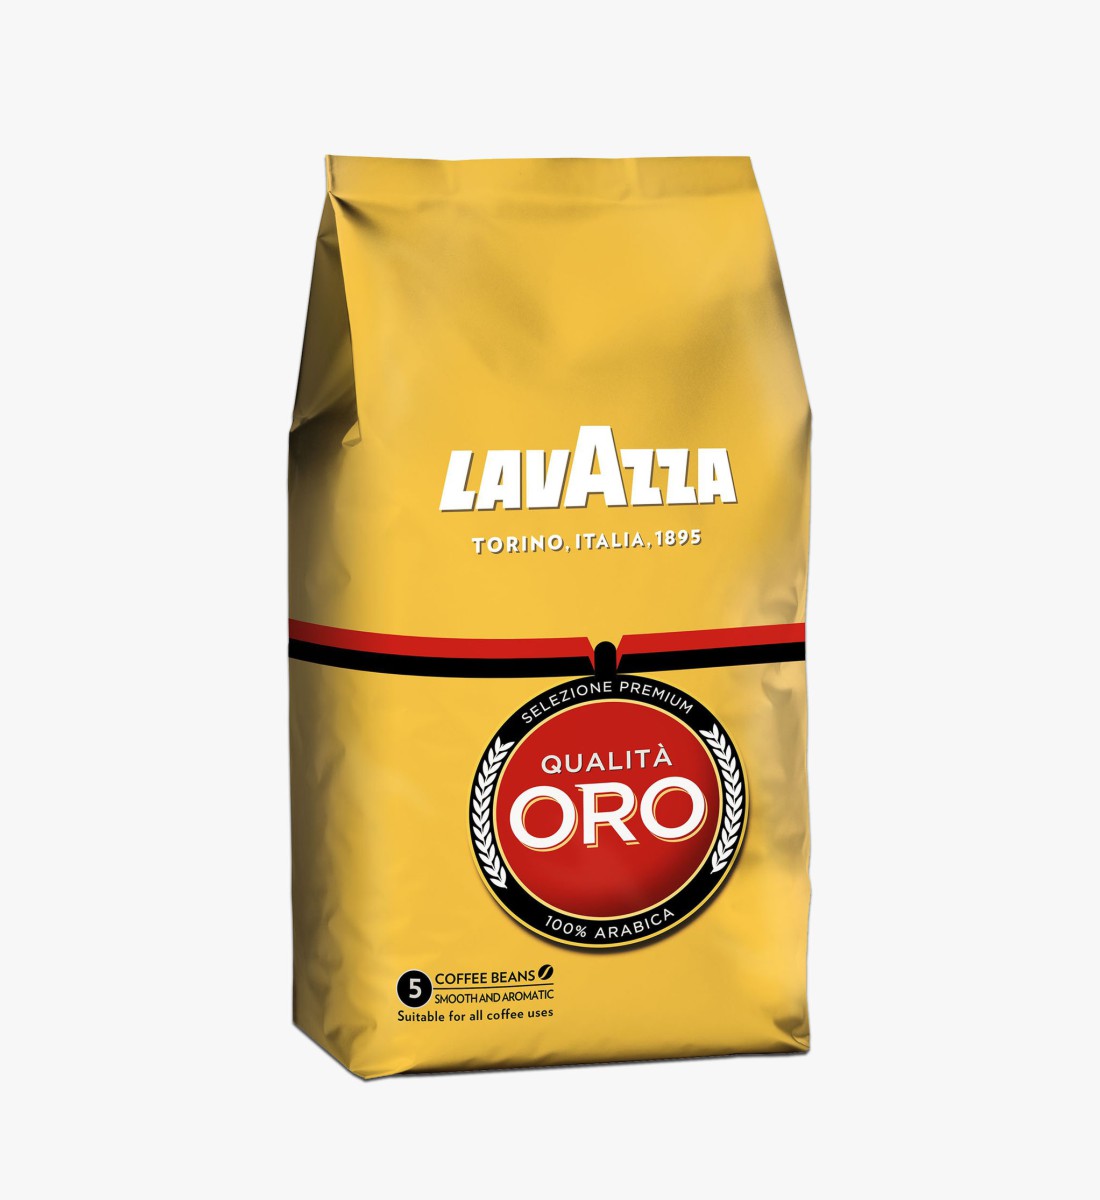 Lavazza Qualita Oro cafea boabe 1 kg bauturialcoolice.ro